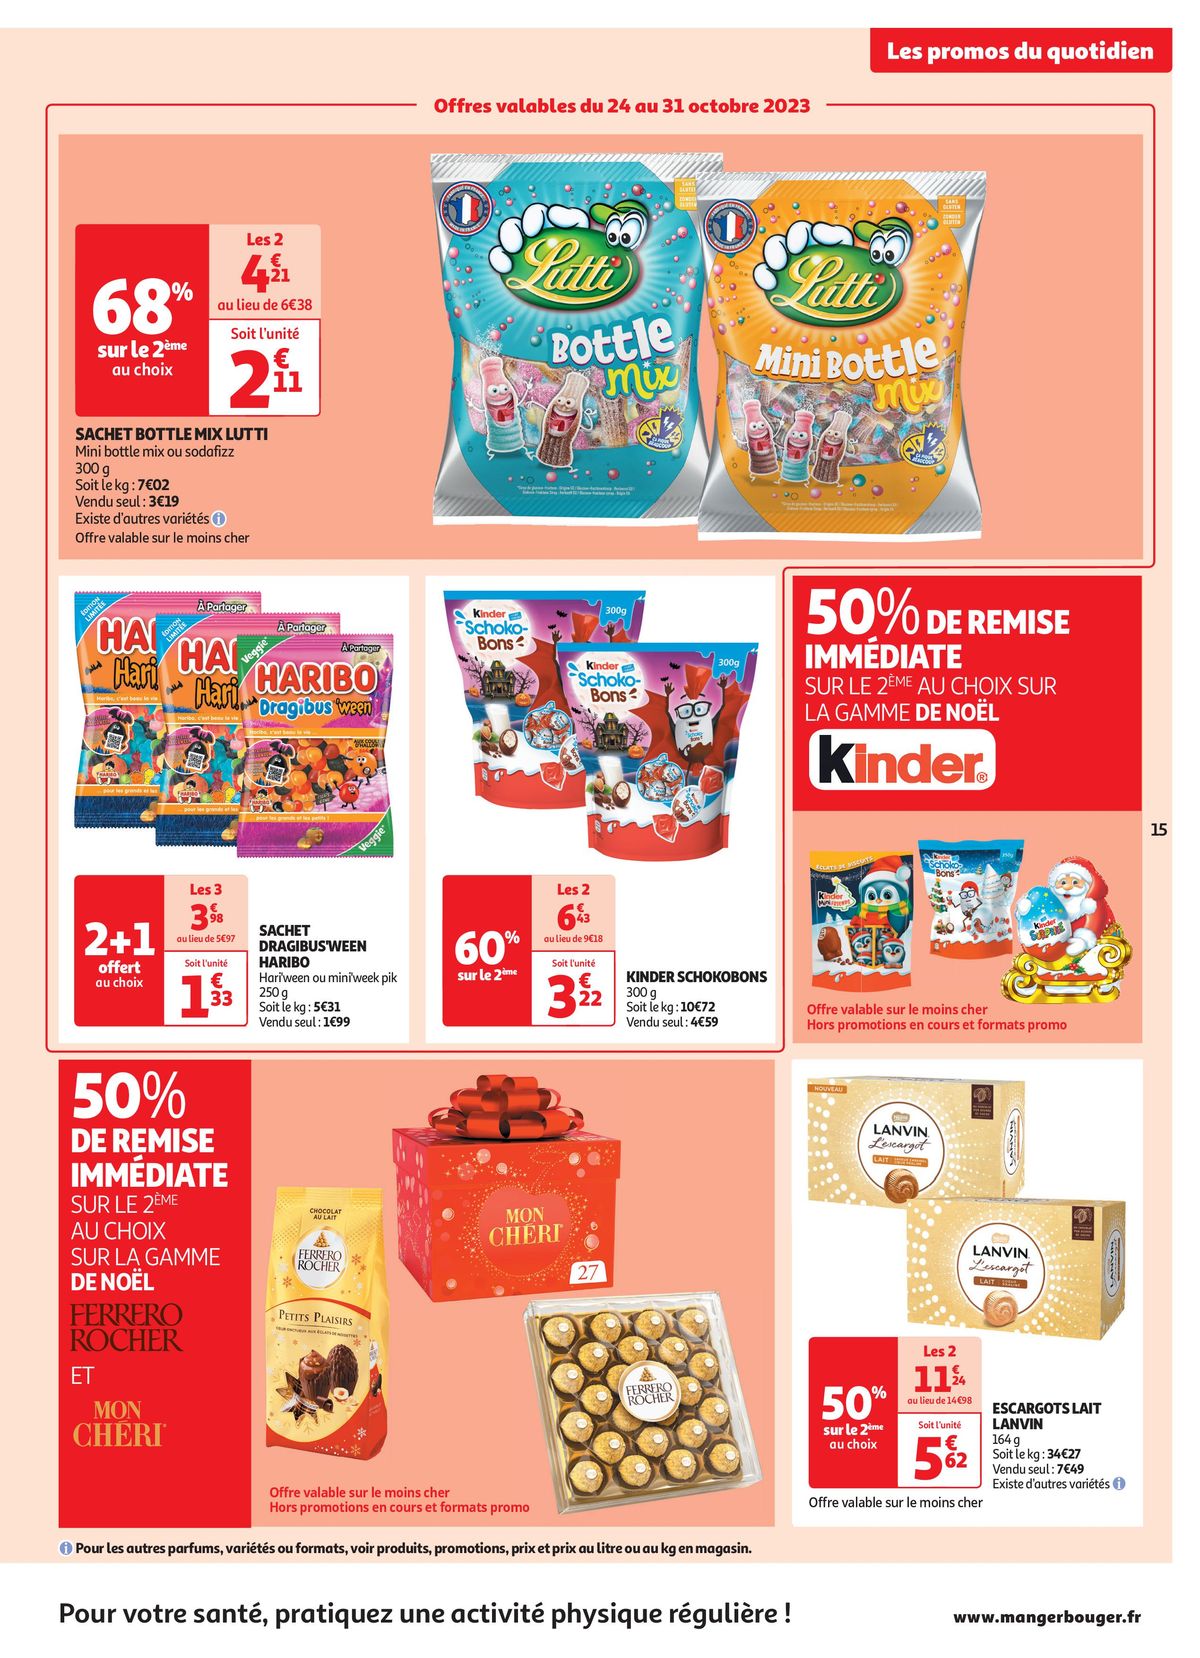 Catalogue Les 25 jours Auchan, c'est parti !, page 00015